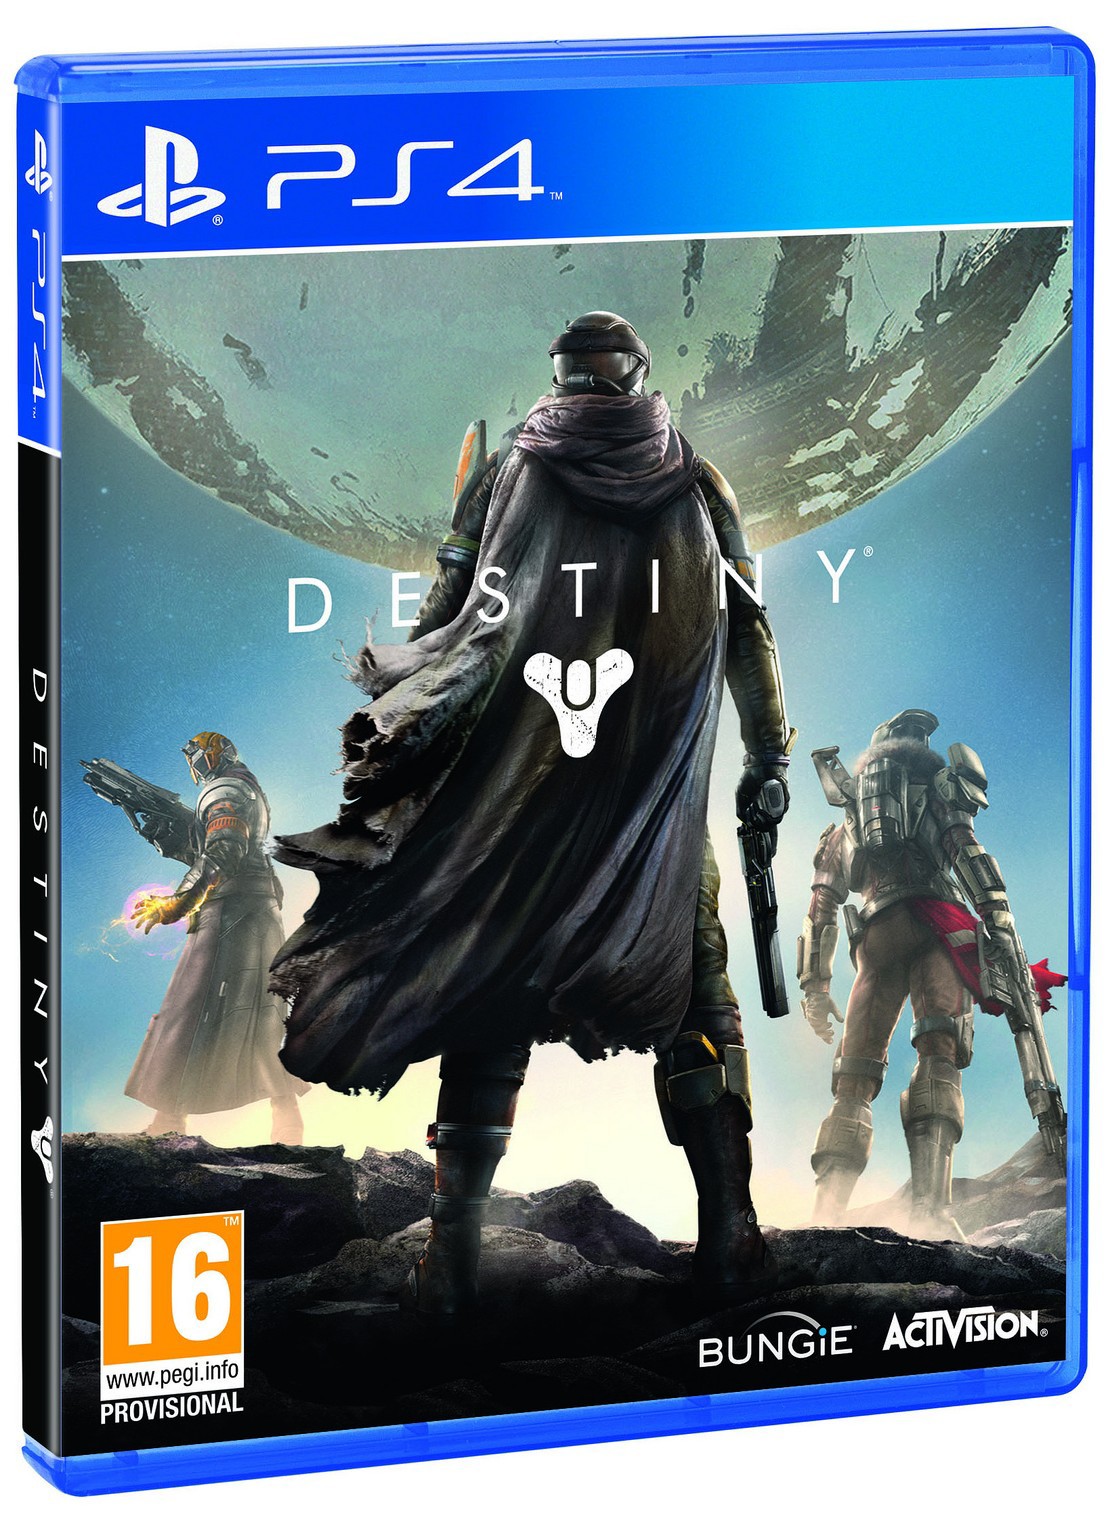 PS4: Destiny (SALE) 